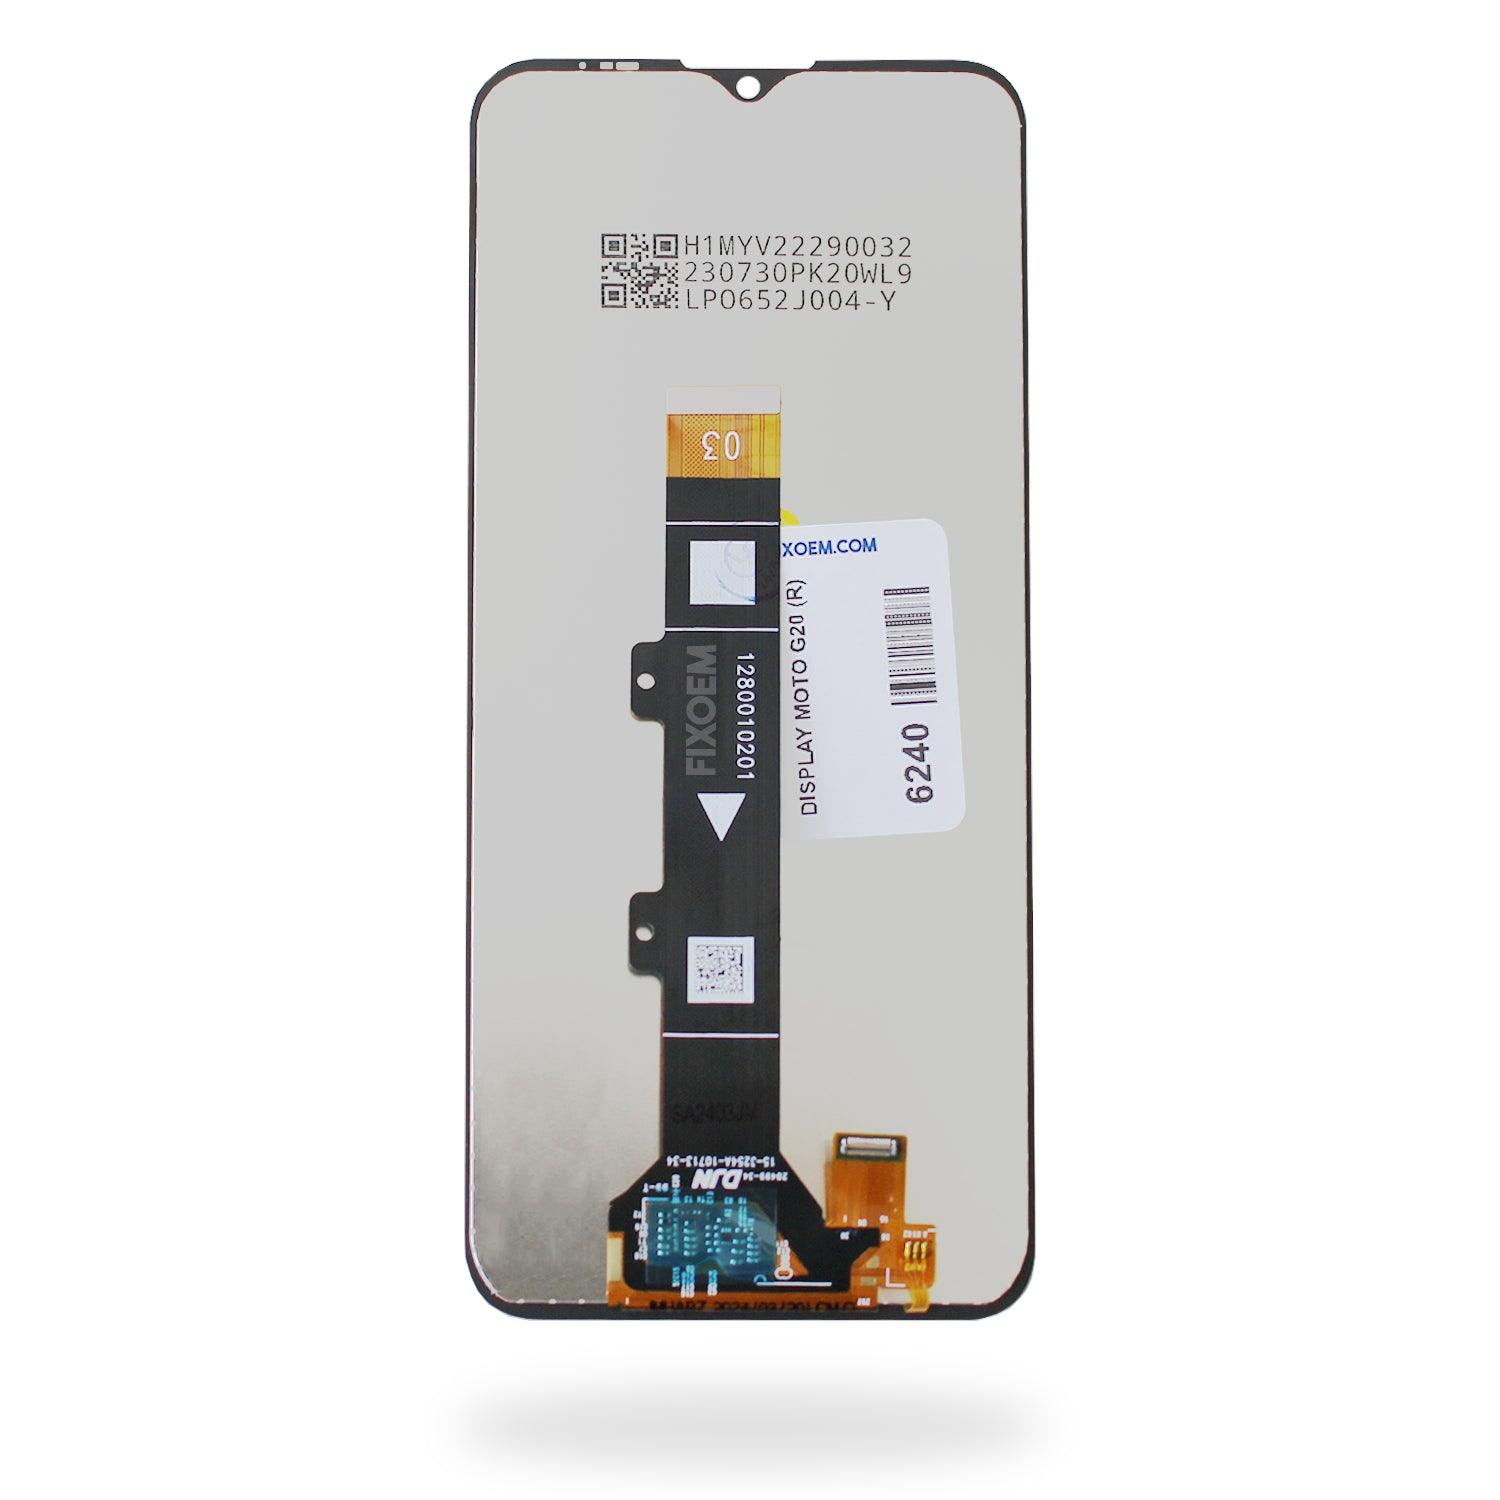 Display Moto G20 XT2128-1 Ips a solo $ 200.00 Refaccion y puestos celulares, refurbish y microelectronica.- FixOEM